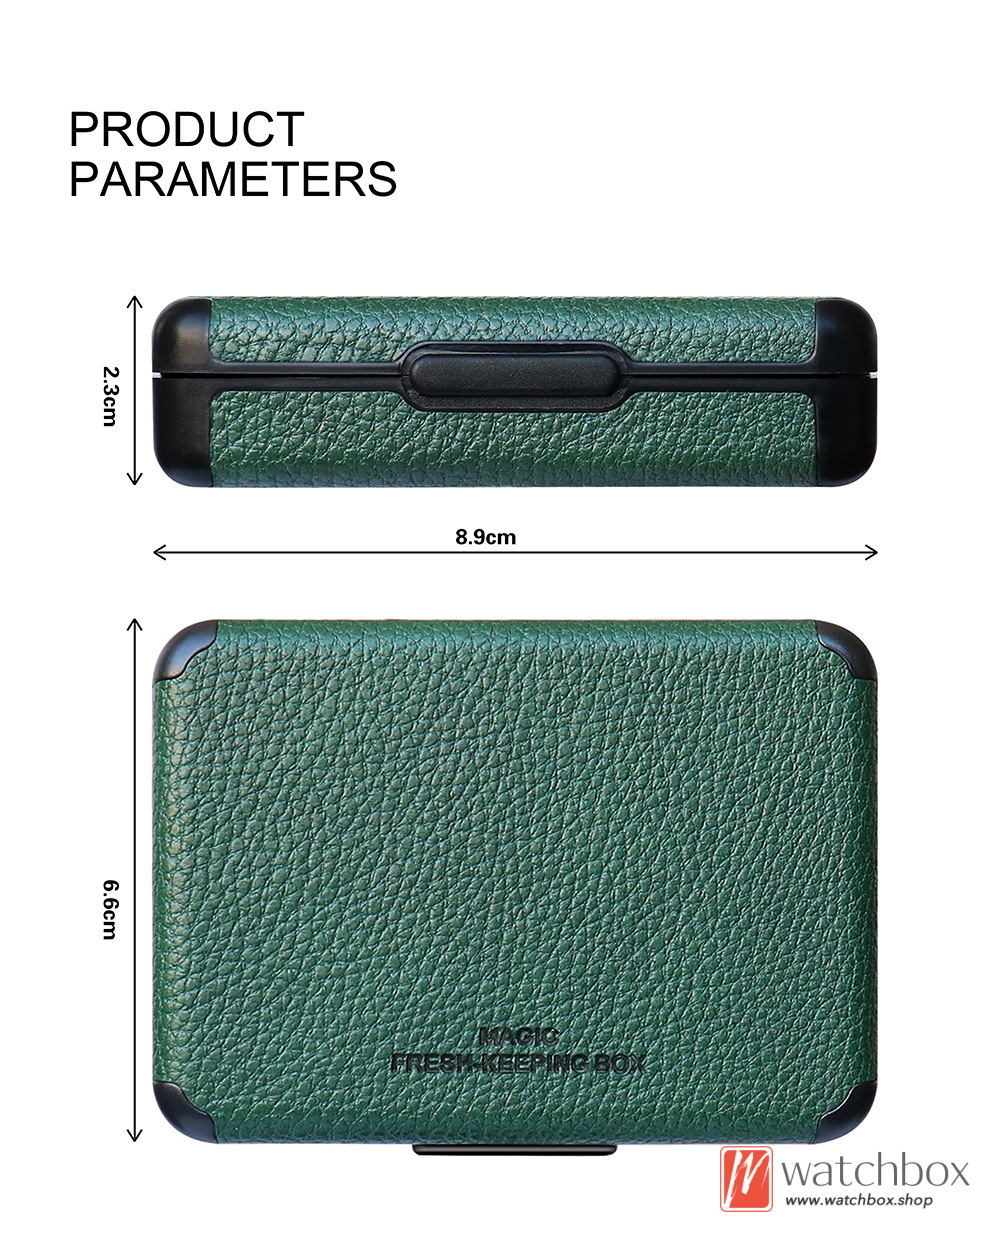 IQO ILUMA PRIME Protective Case Box Leather Cigarette Case iqo 3.0 Cartridge Magic Fresh-keeping Box